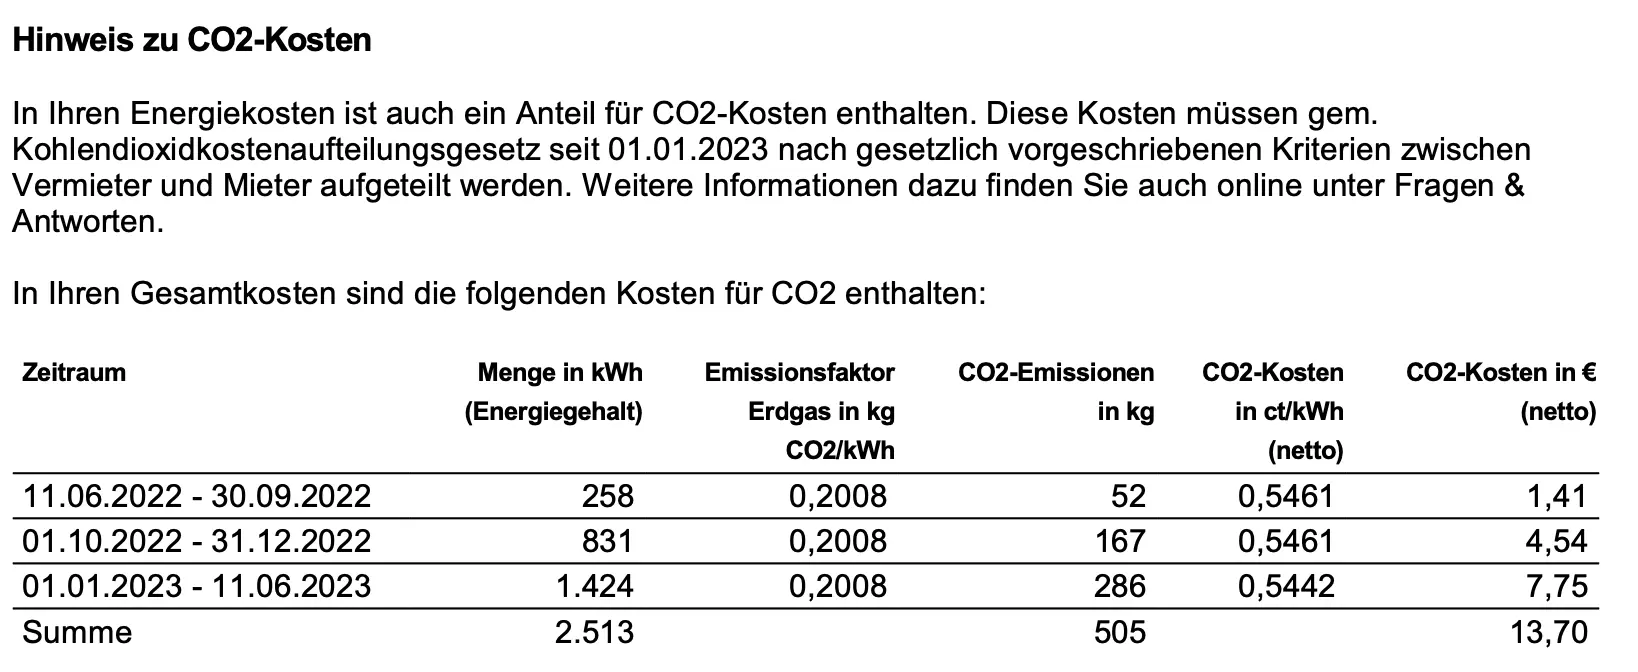 Gasrechnungsbeispiel: CO2-Kosten